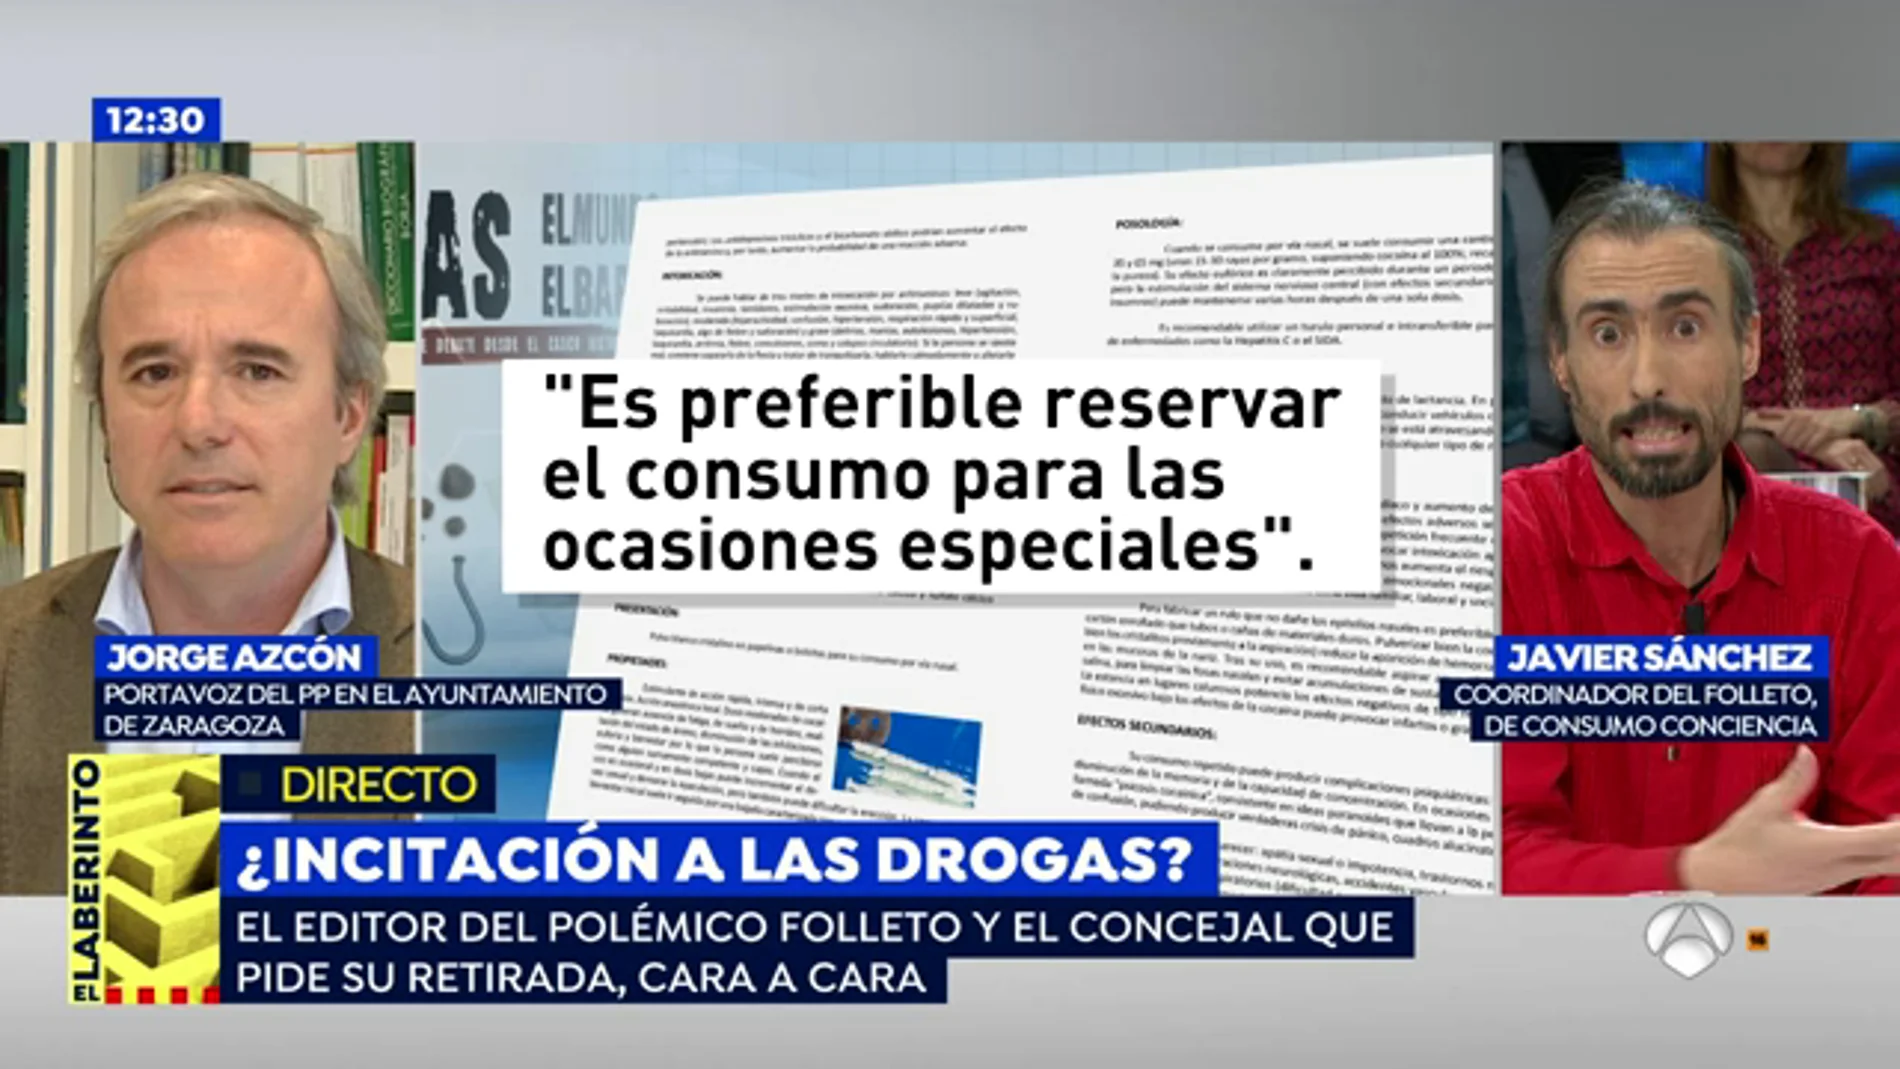 El portavoz del PP de Zaragoza, sobre el folleto de consumo de drogas: "En la guía del señor Sánchez se dice 'la droga no mata, mata la ignorancia'"